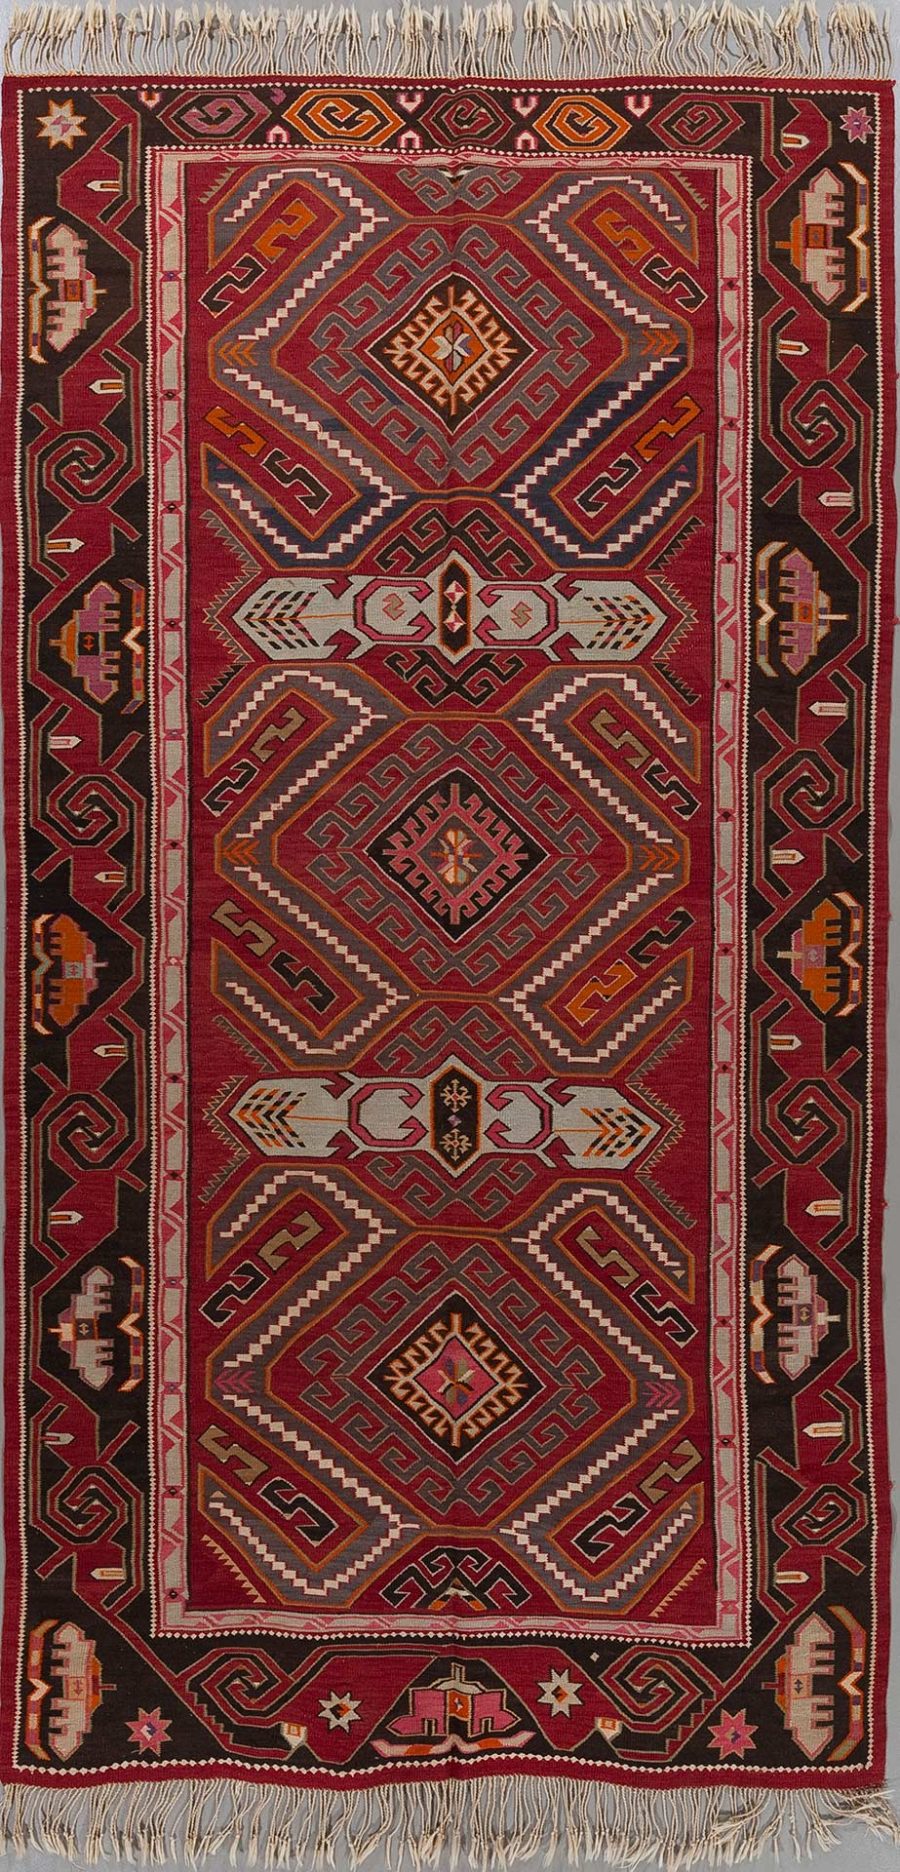 Traditioneller Teppich mit komplexem, geometrischem Muster in Rot-, Schwarz-, Weiß- und Orangetönen, umgeben von dekorativen Bordüren und Fransen an den Enden.